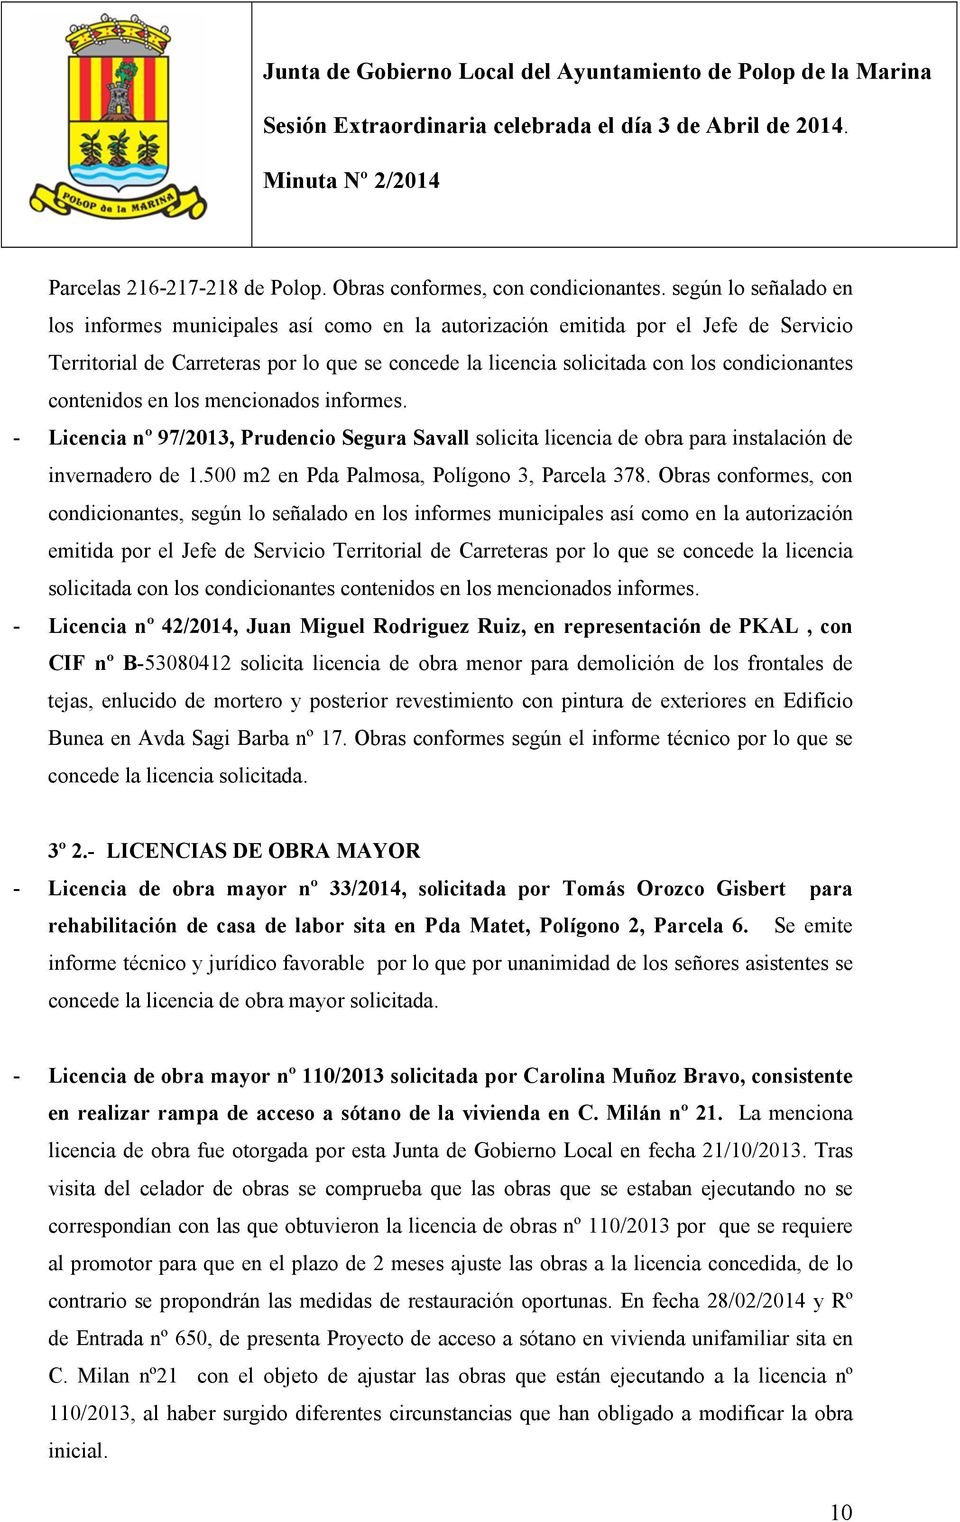 contenidos en los mencionados informes. - Licencia nº 97/2013, Prudencio Segura Savall solicita licencia de obra para instalación de invernadero de 1.500 m2 en Pda Palmosa, Polígono 3, Parcela 378.